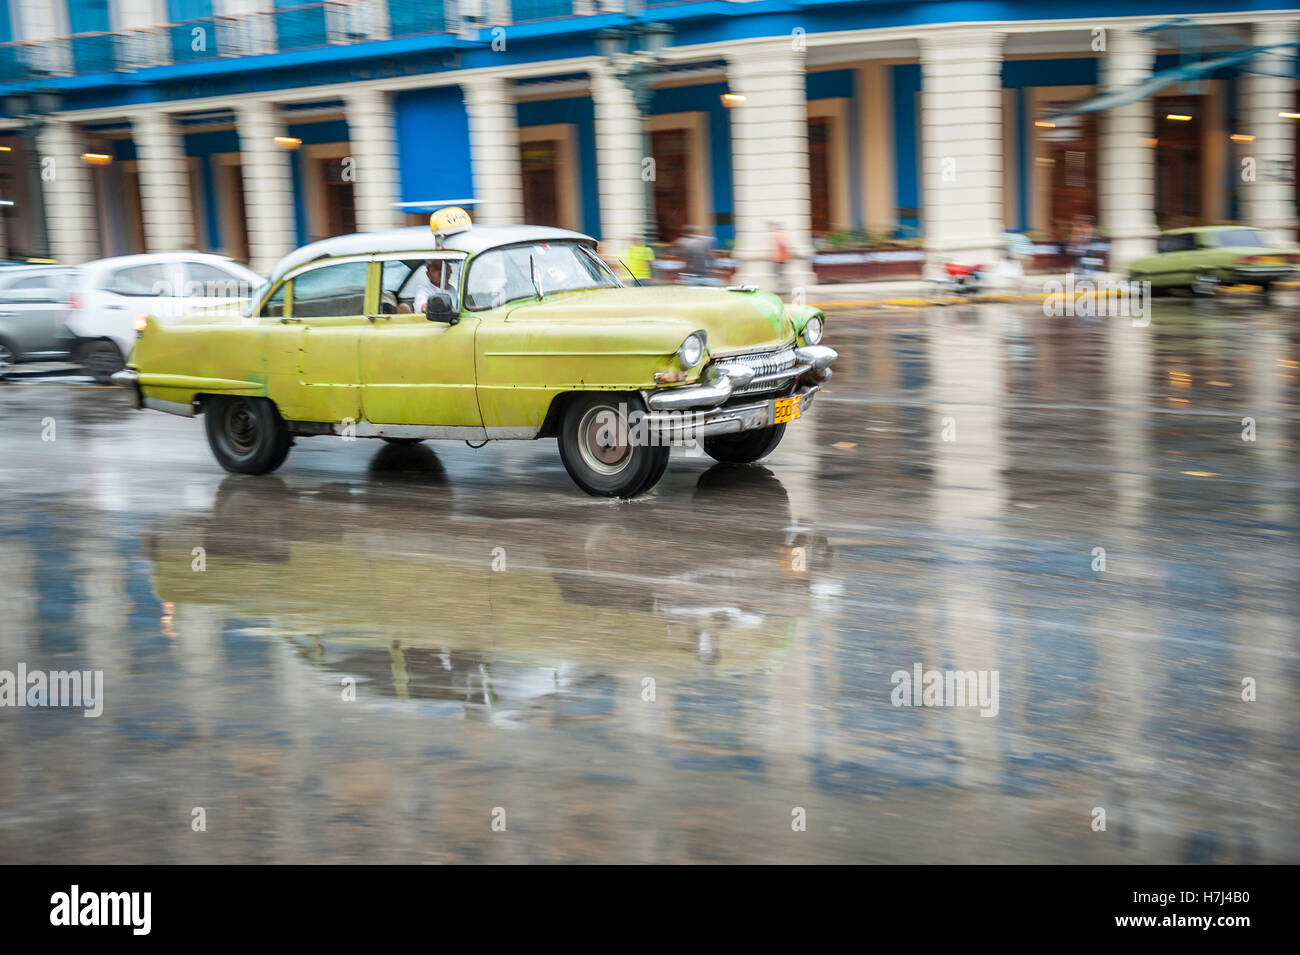 L'Avana, Cuba - 18 Maggio 2011: classica degli anni cinquanta unità auto in motion blur attraverso le strade bagnate di Centro dopo un acquazzone. Foto Stock